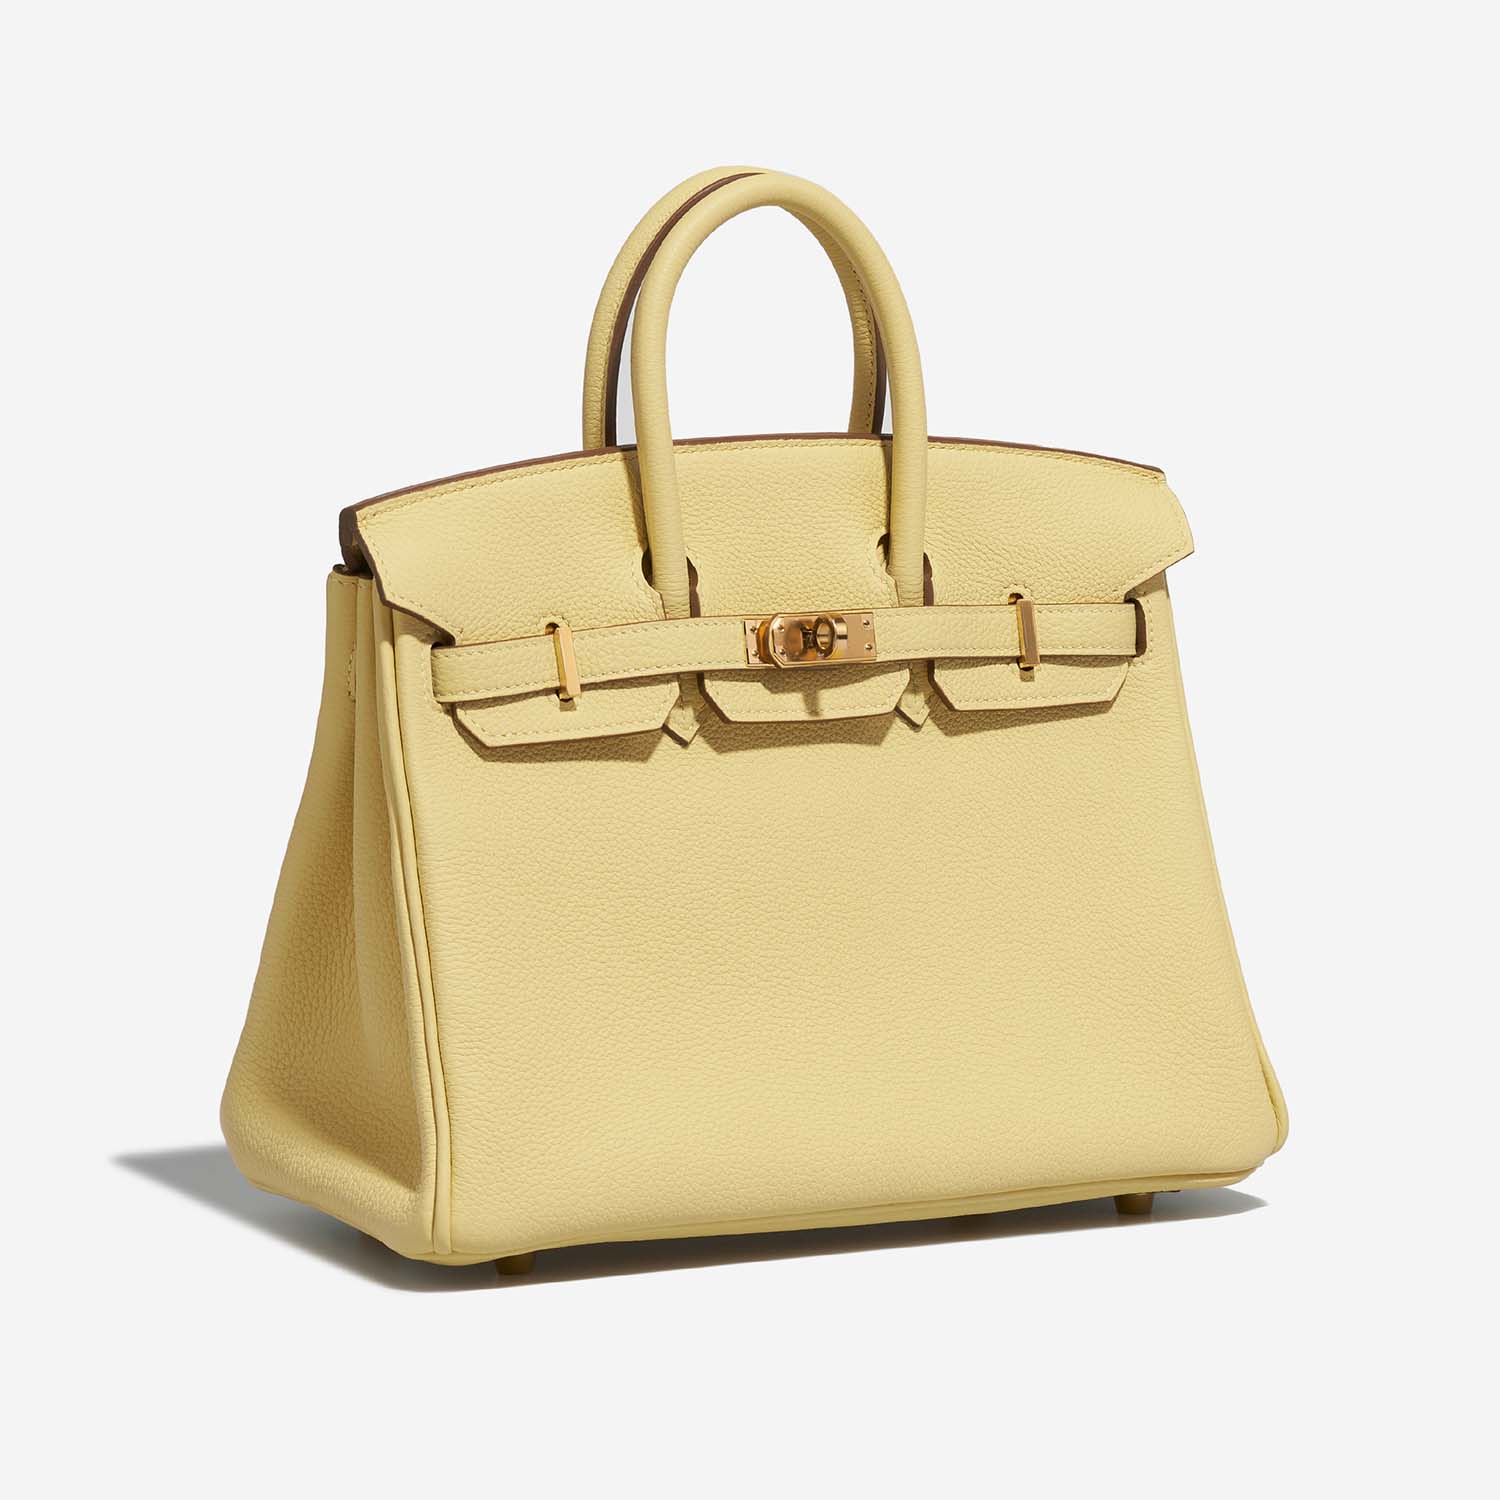 Hermès Birkin 25 JaunePoussin 6SF S | Verkaufen Sie Ihre Designertasche auf Saclab.com